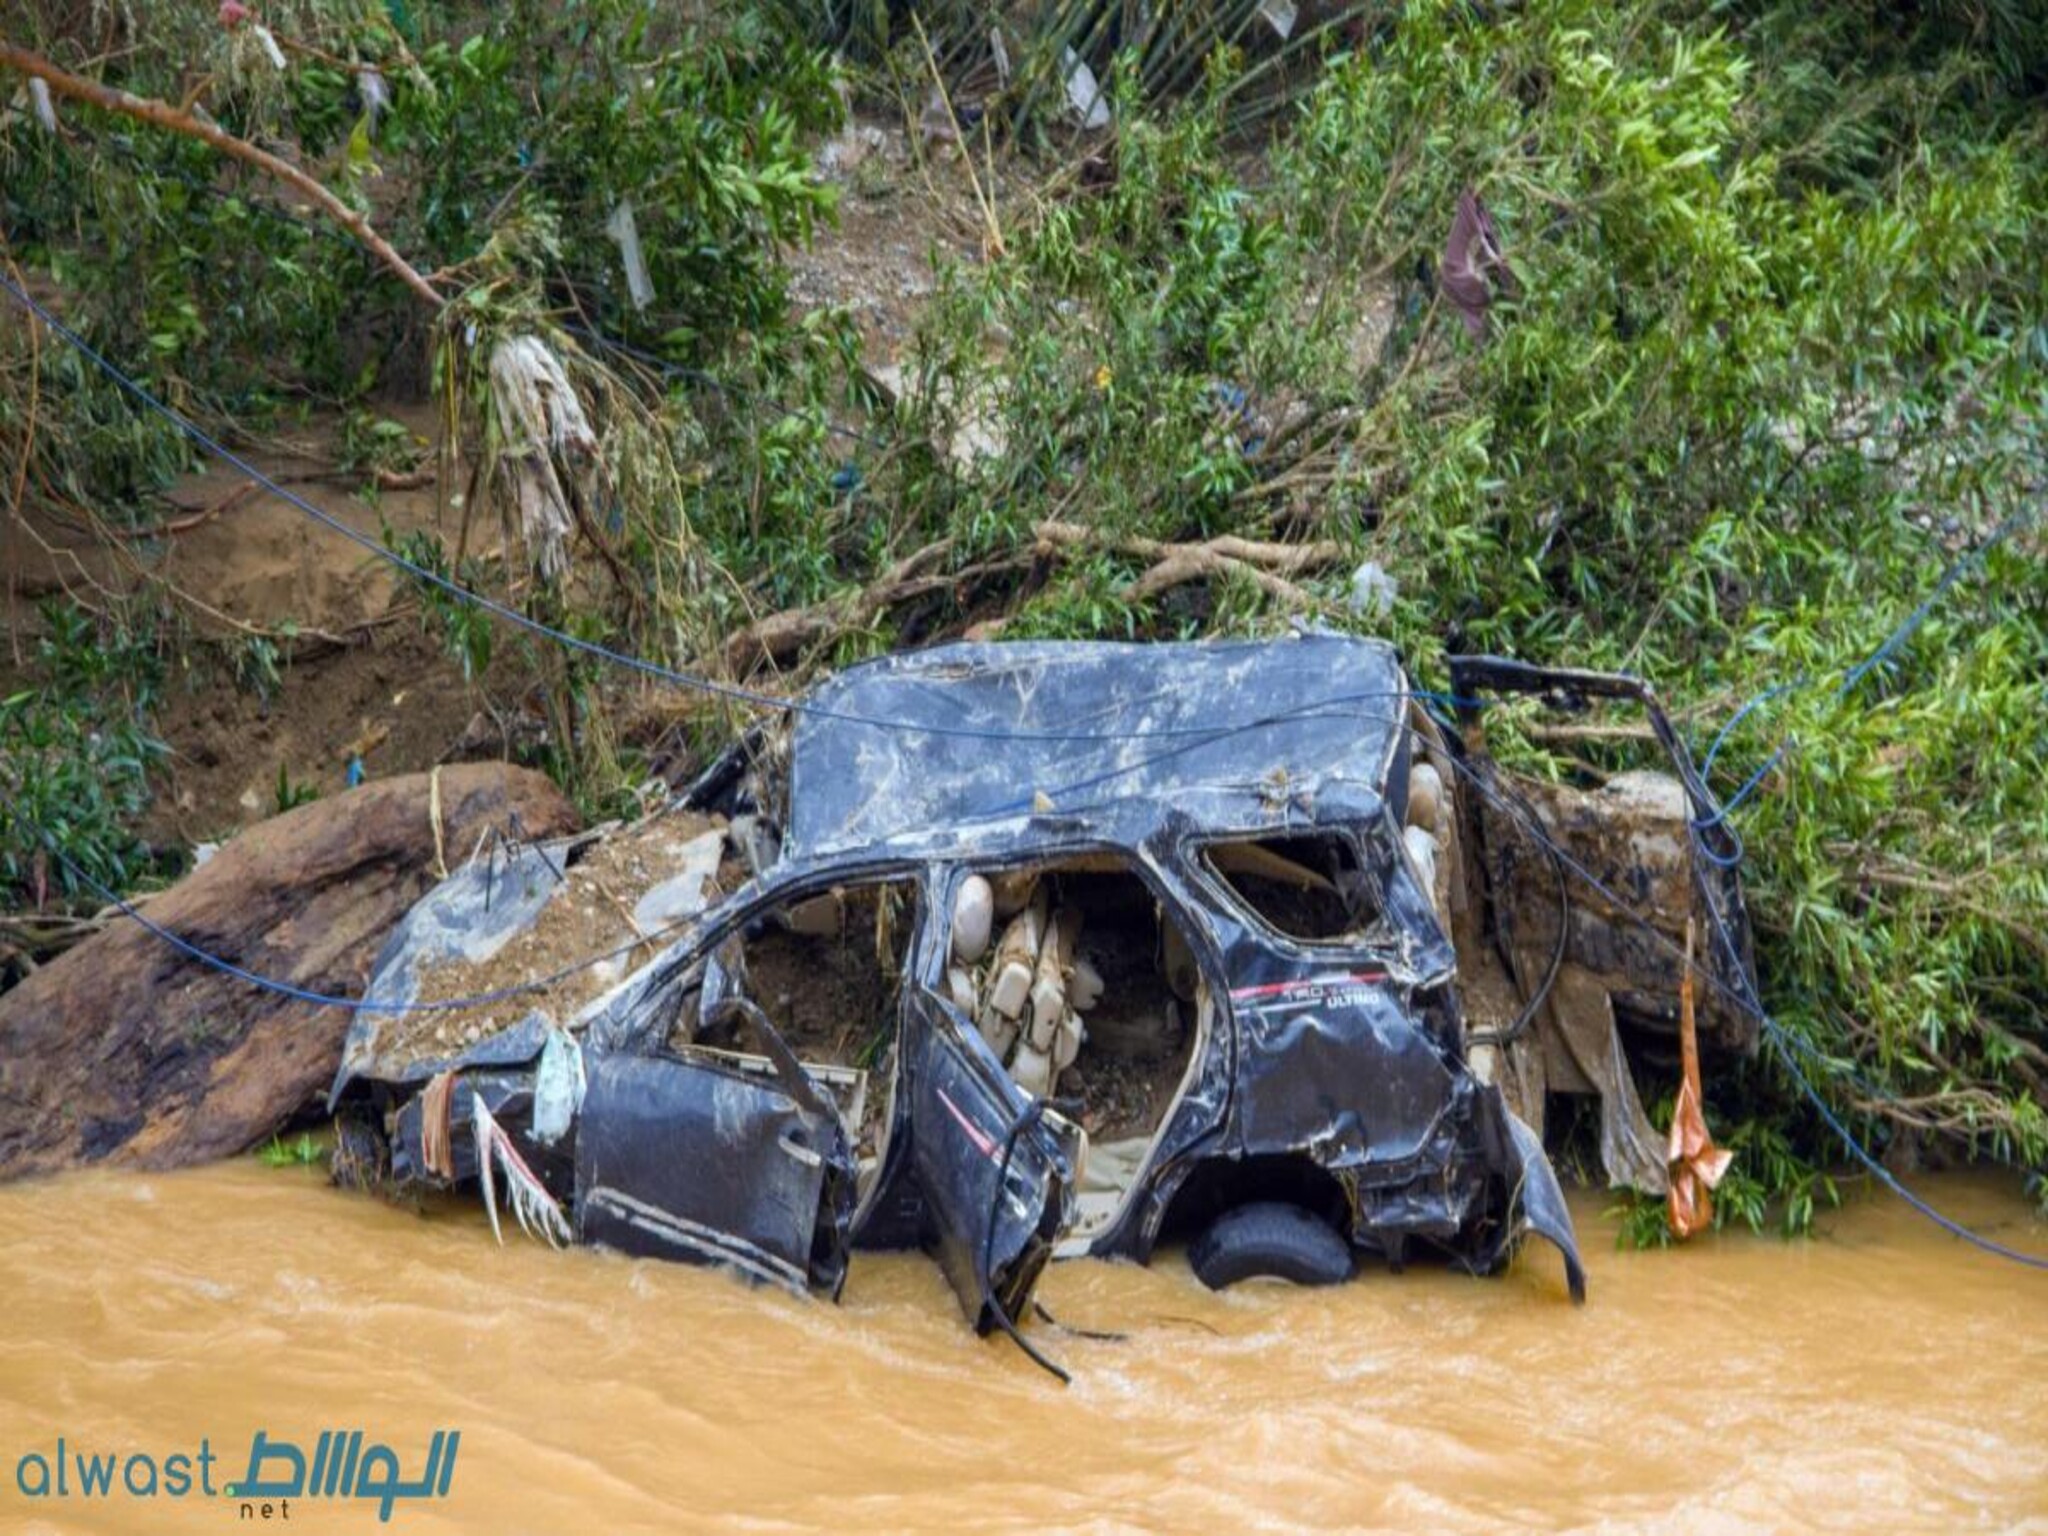 Indonesia: 18 Dead, 5 Missing, 46,000 Evacuated After Floods, Landslide